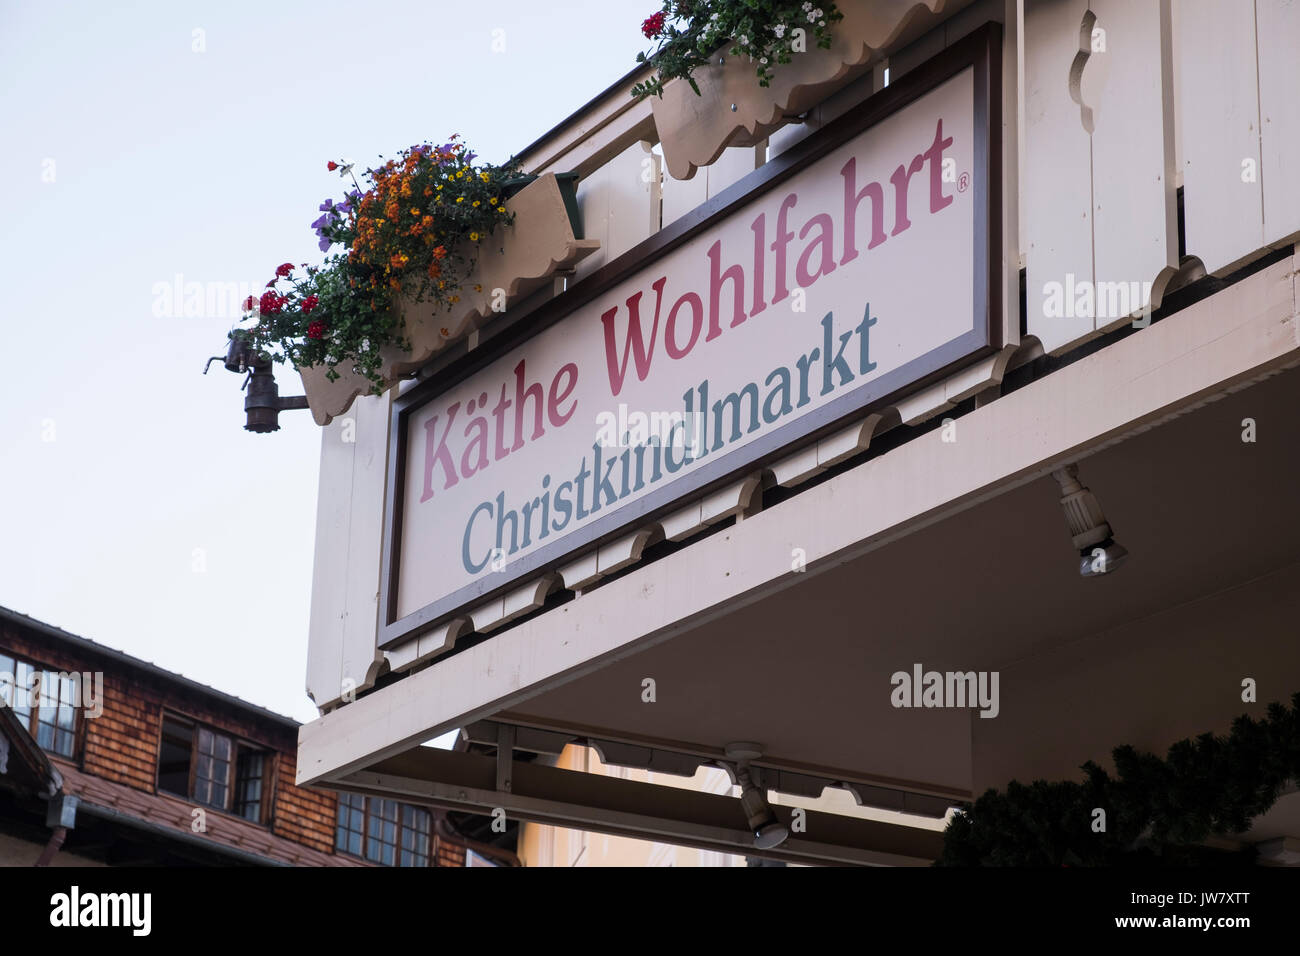 Kathe Wohlfahrt Christkindlmarkt, christmas shop in Oberammergau, Garmisch Partenkirchen, Bavaria, Germany Stock Photo